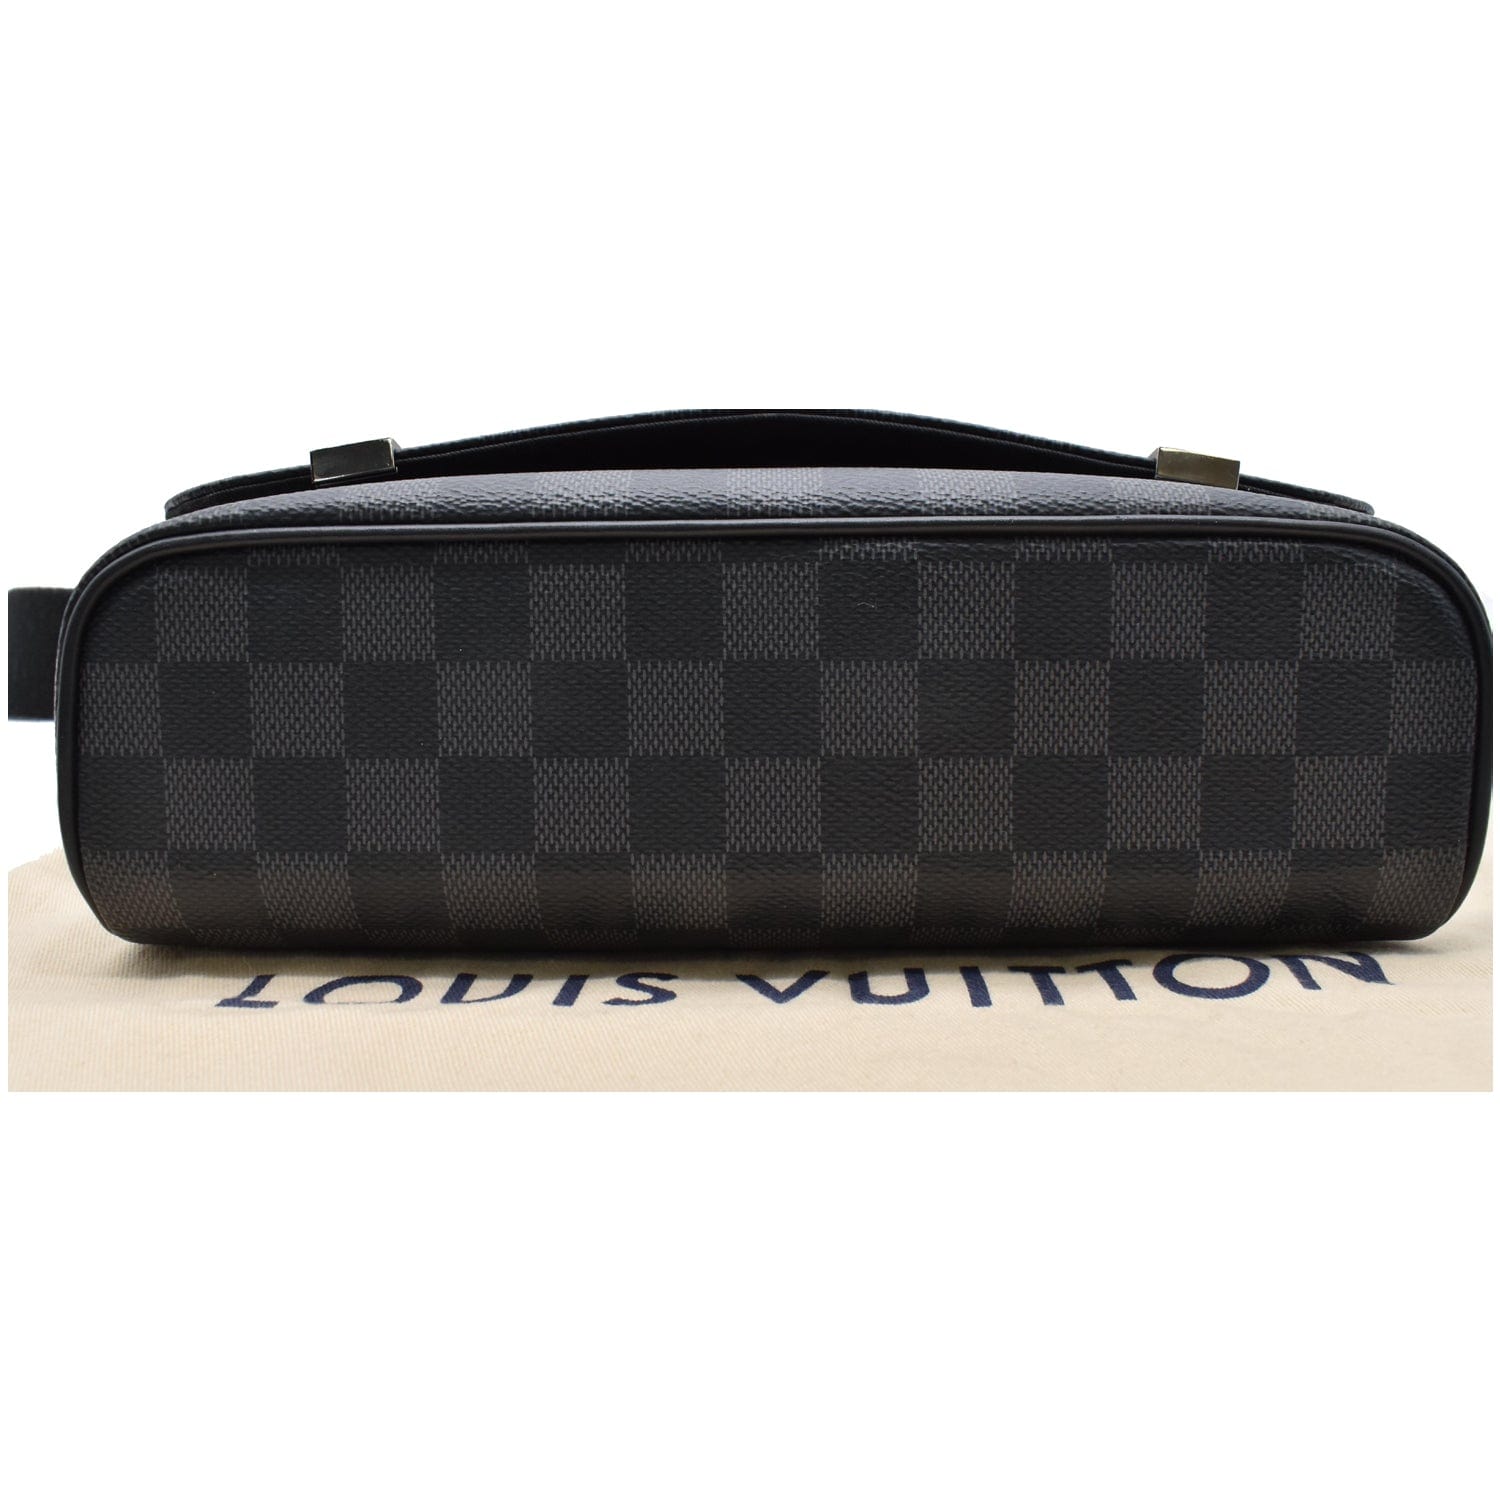 Louis Vuitton District Messenger PM Shoulder Bag Black Canvas/Leather Damier  Graphite for sale online